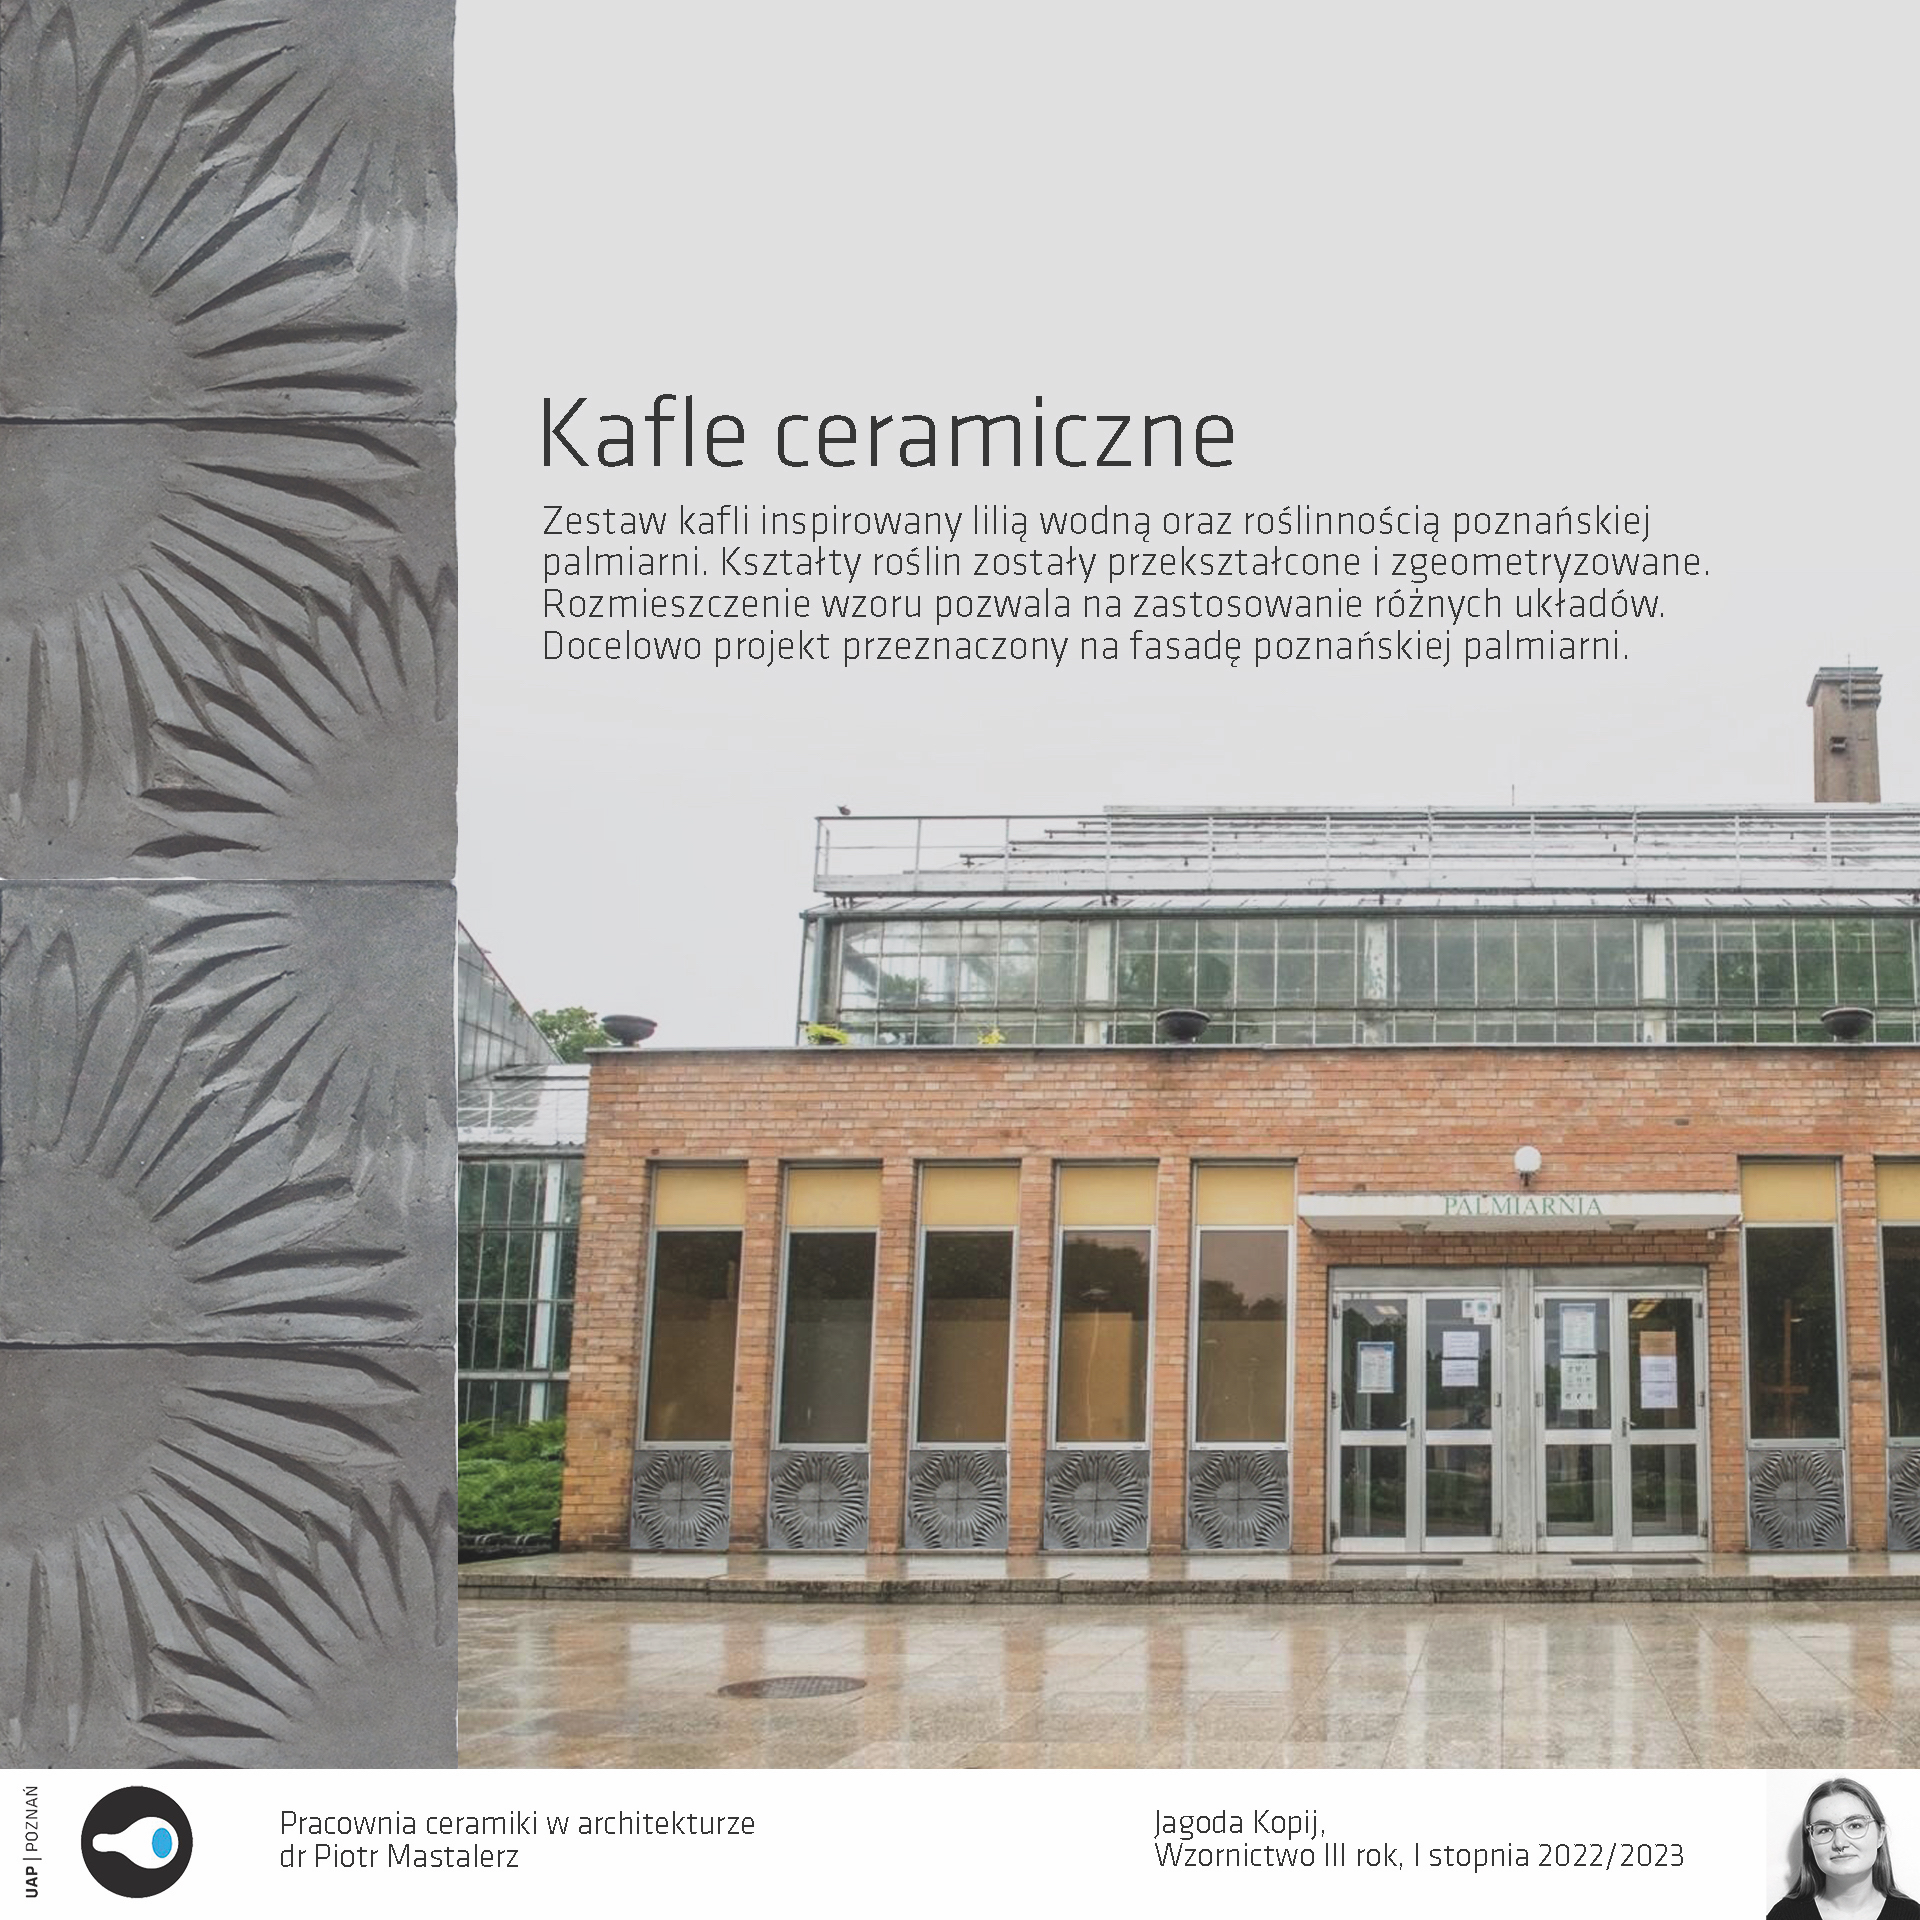 Opis alternatywny: Ceramiczne moduły umieszczone na budynku poznańskiej palmiarni.